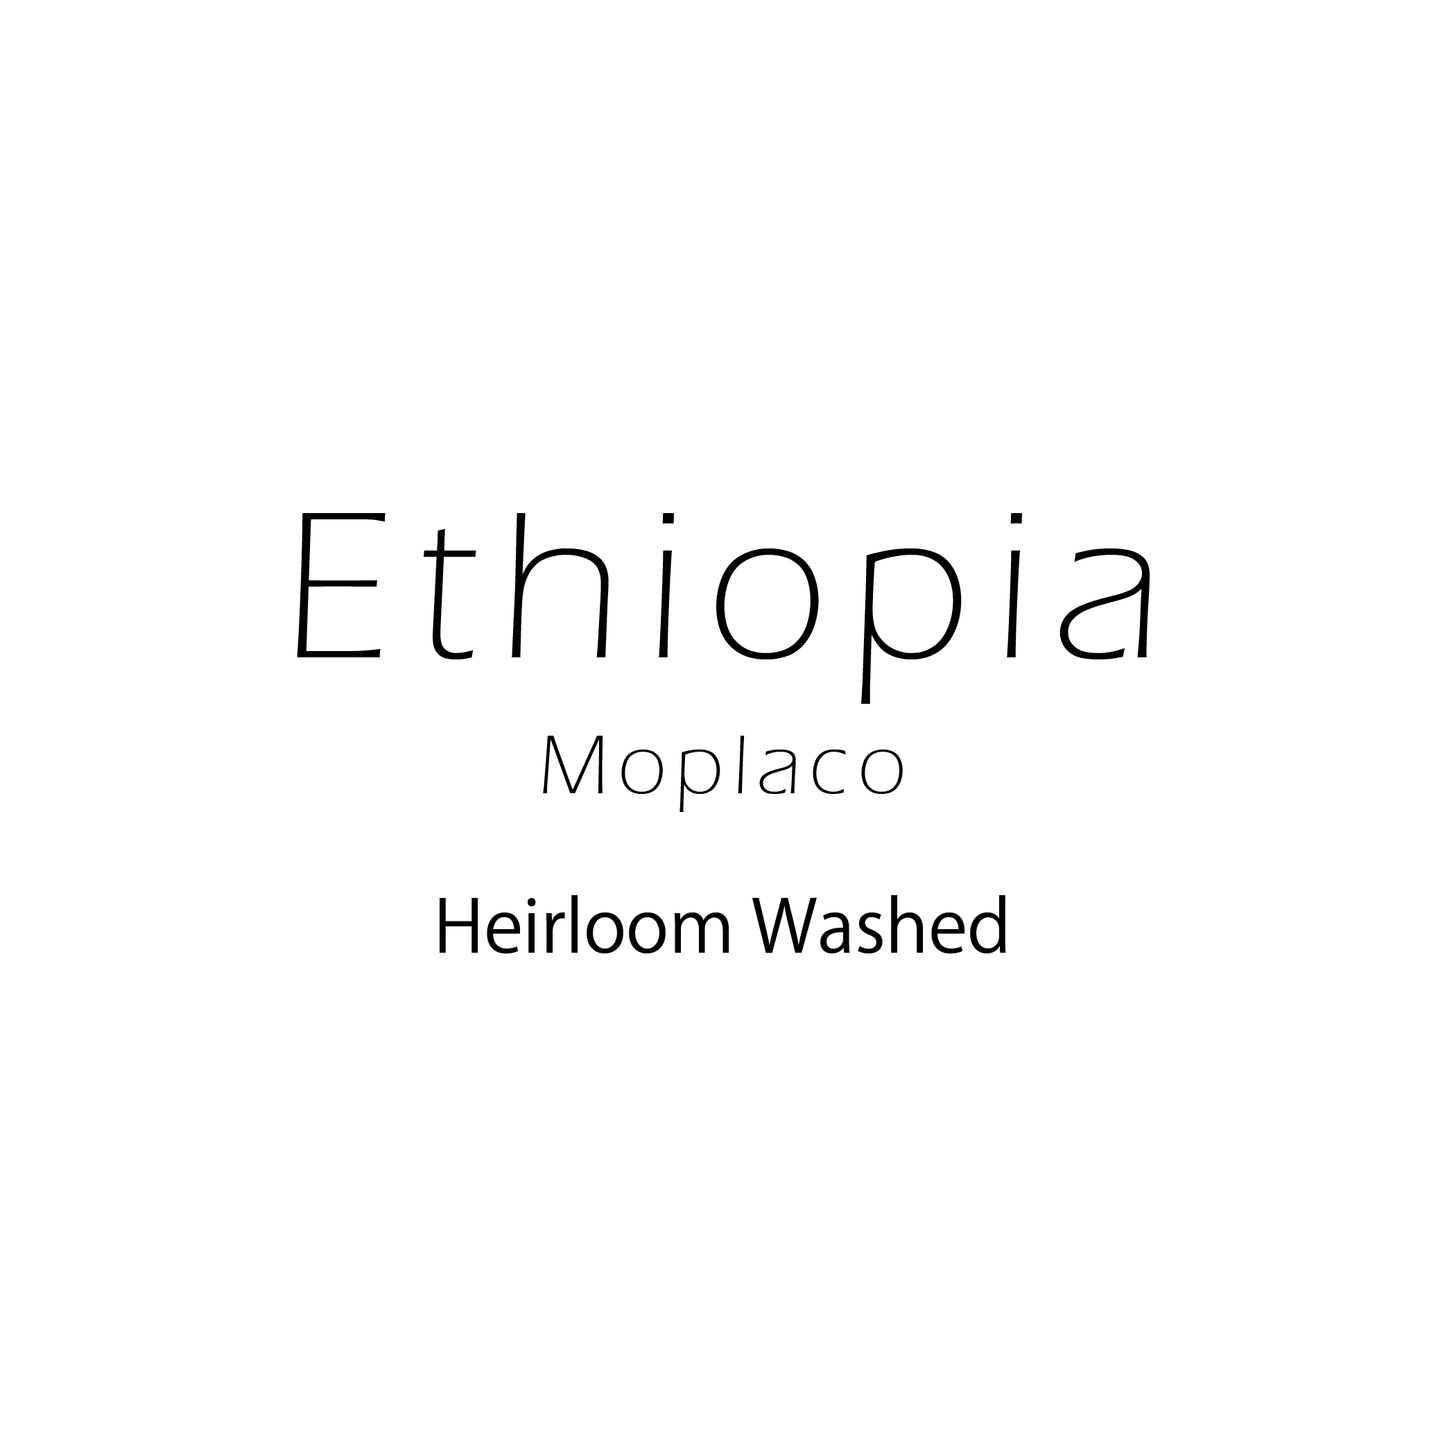 Ethiopia Heirloom Washed